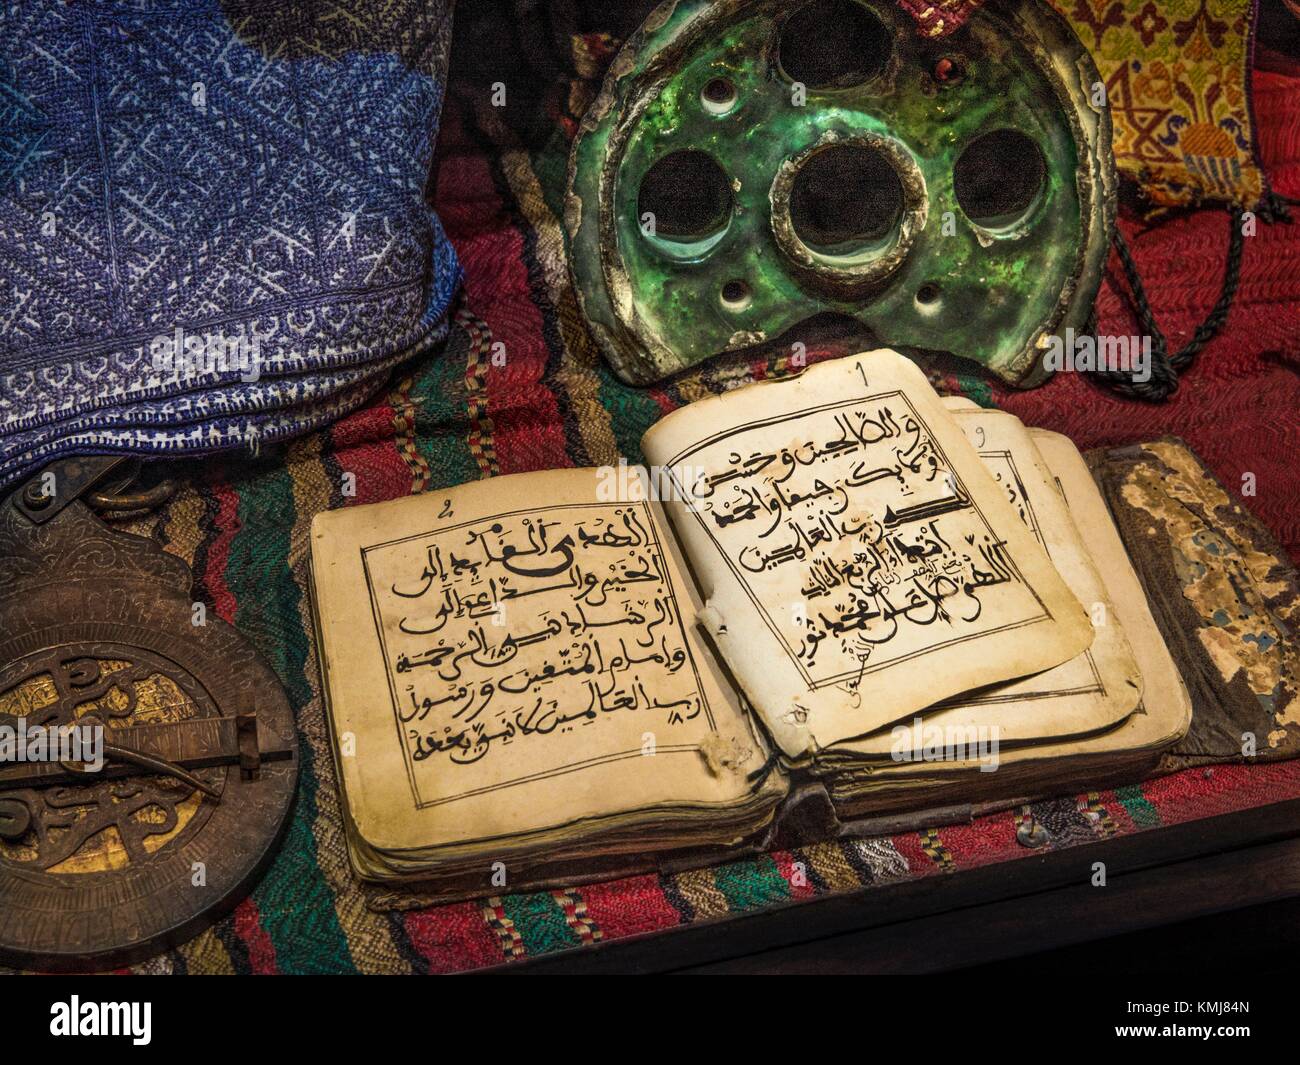 Maroc, Fès, ancien livre religieux, 18e siècle, un astrolabe, une encre fort, et quelques vieux morceaux de textiles. Banque D'Images